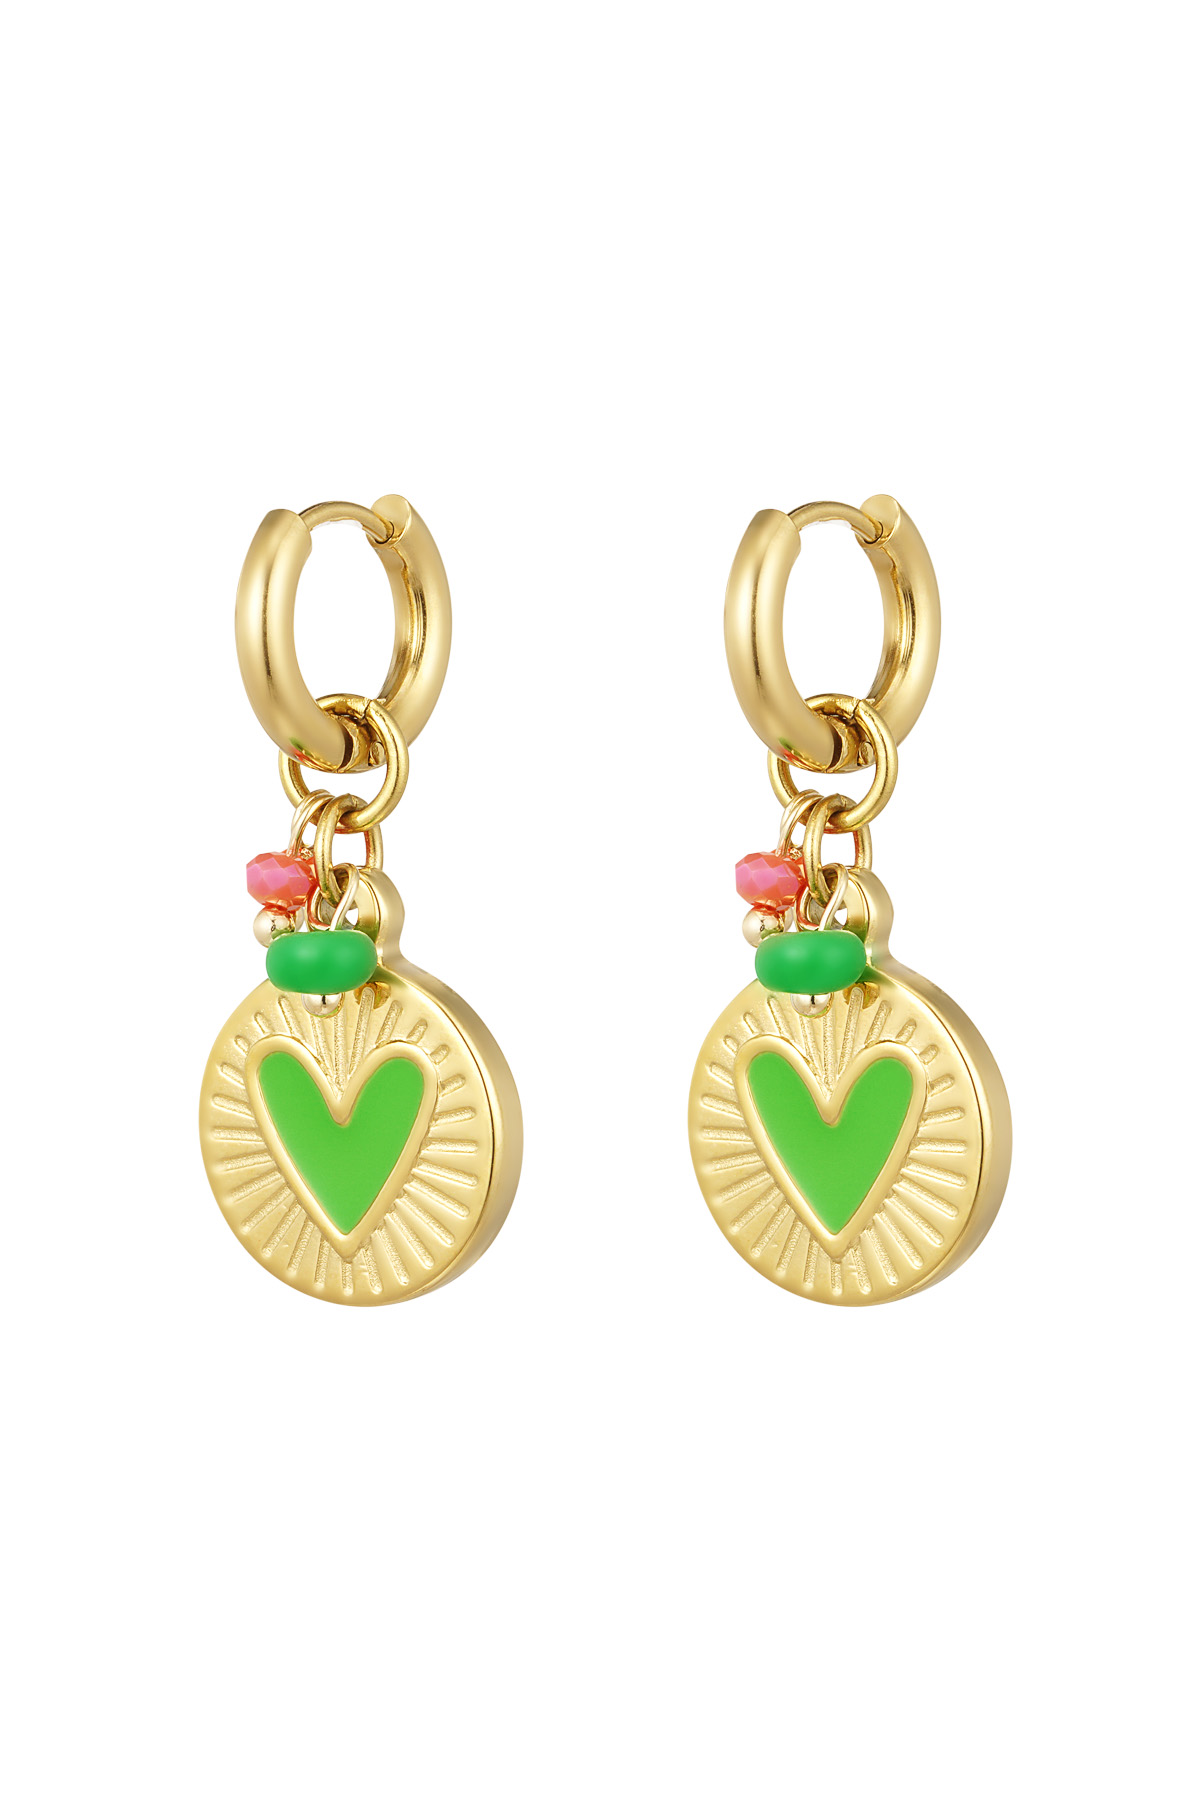 Boucles d'oreilles pendentif pièce de monnaie avec coeur vert - or